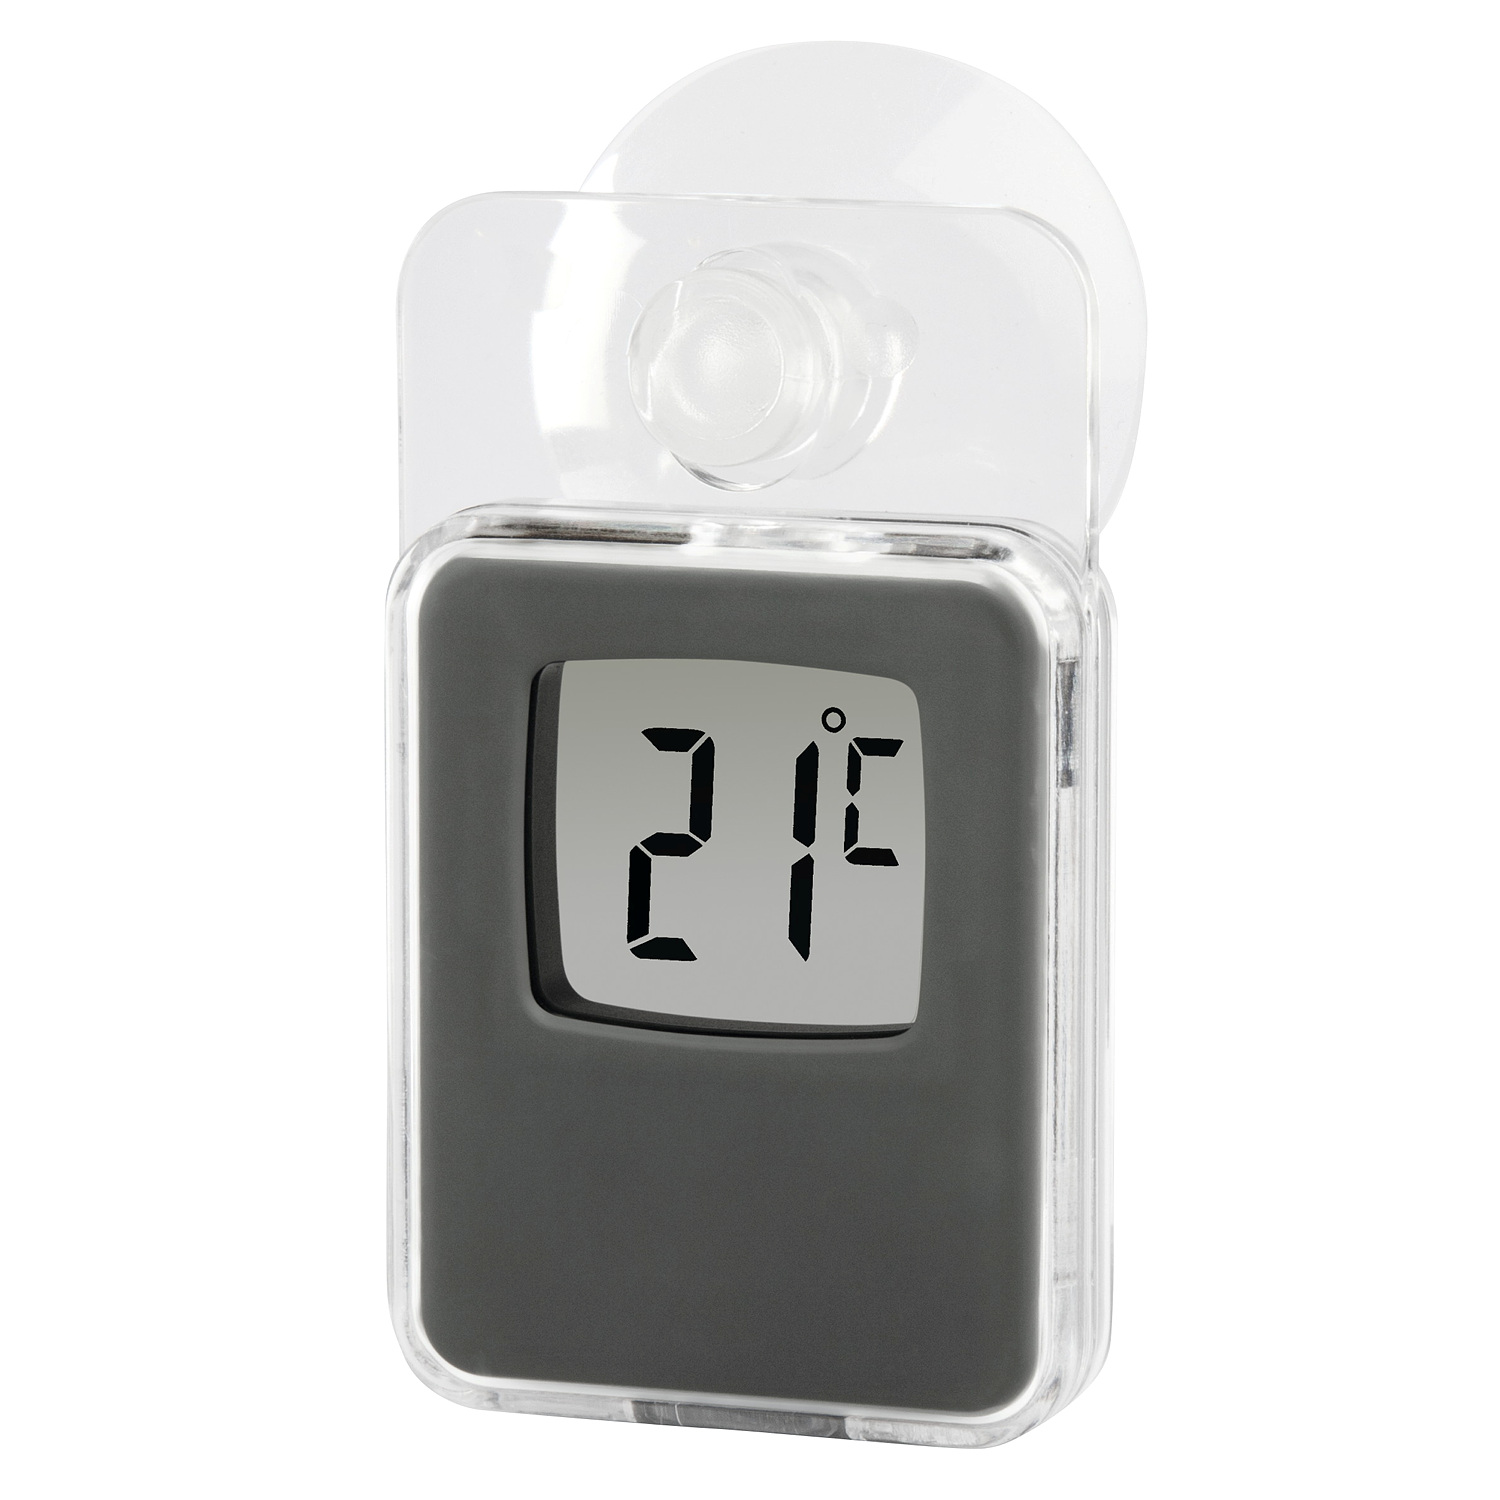 hama Fensterthermometer für innen und außen, digital, 7,5 x 4,6 cm, Grau